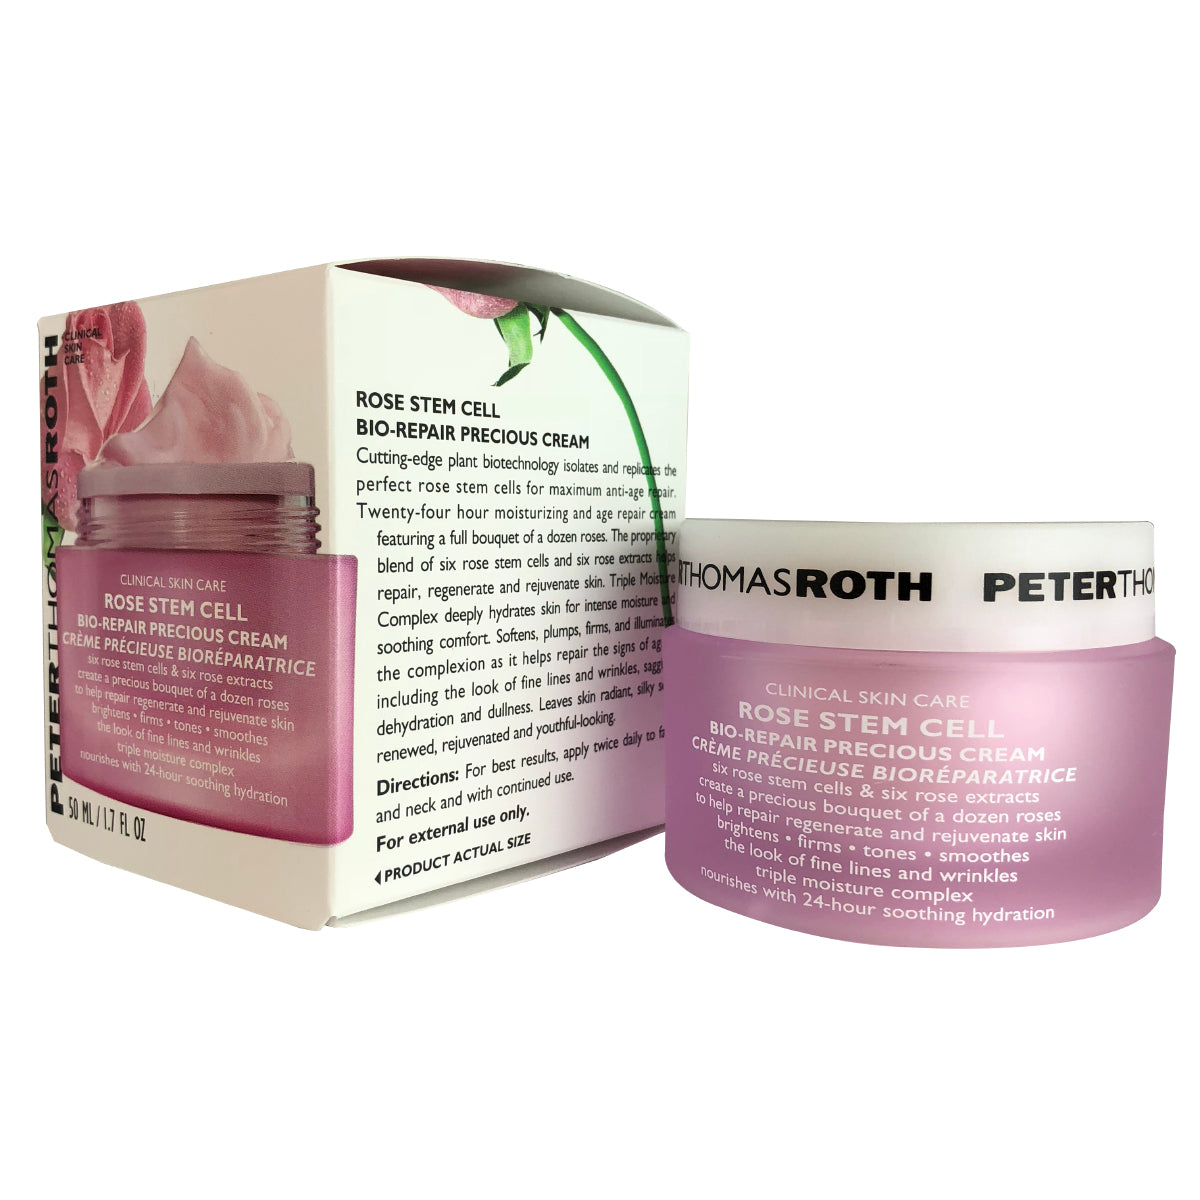 Peter Thomas Roth Rose Stem Cell Precious Face Cream 1.7 oz